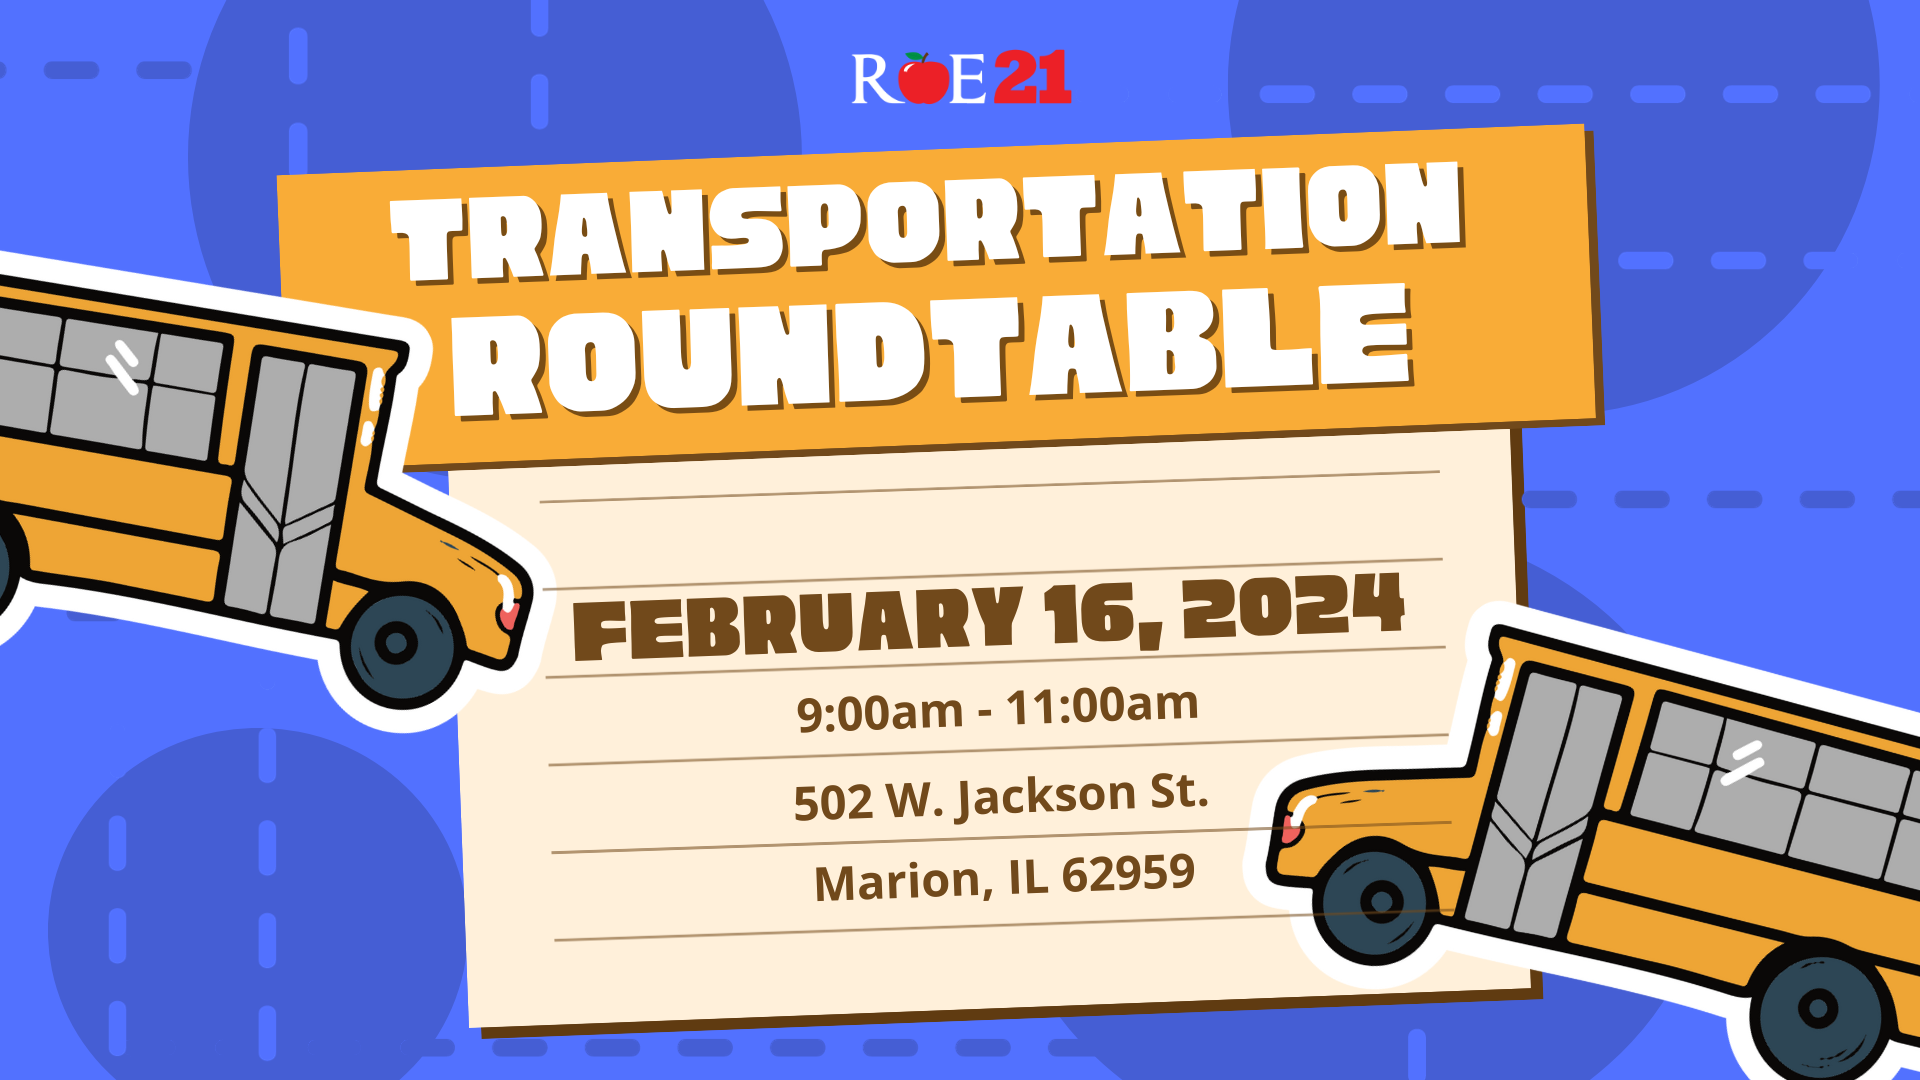 Transportation Roundtable Flyer